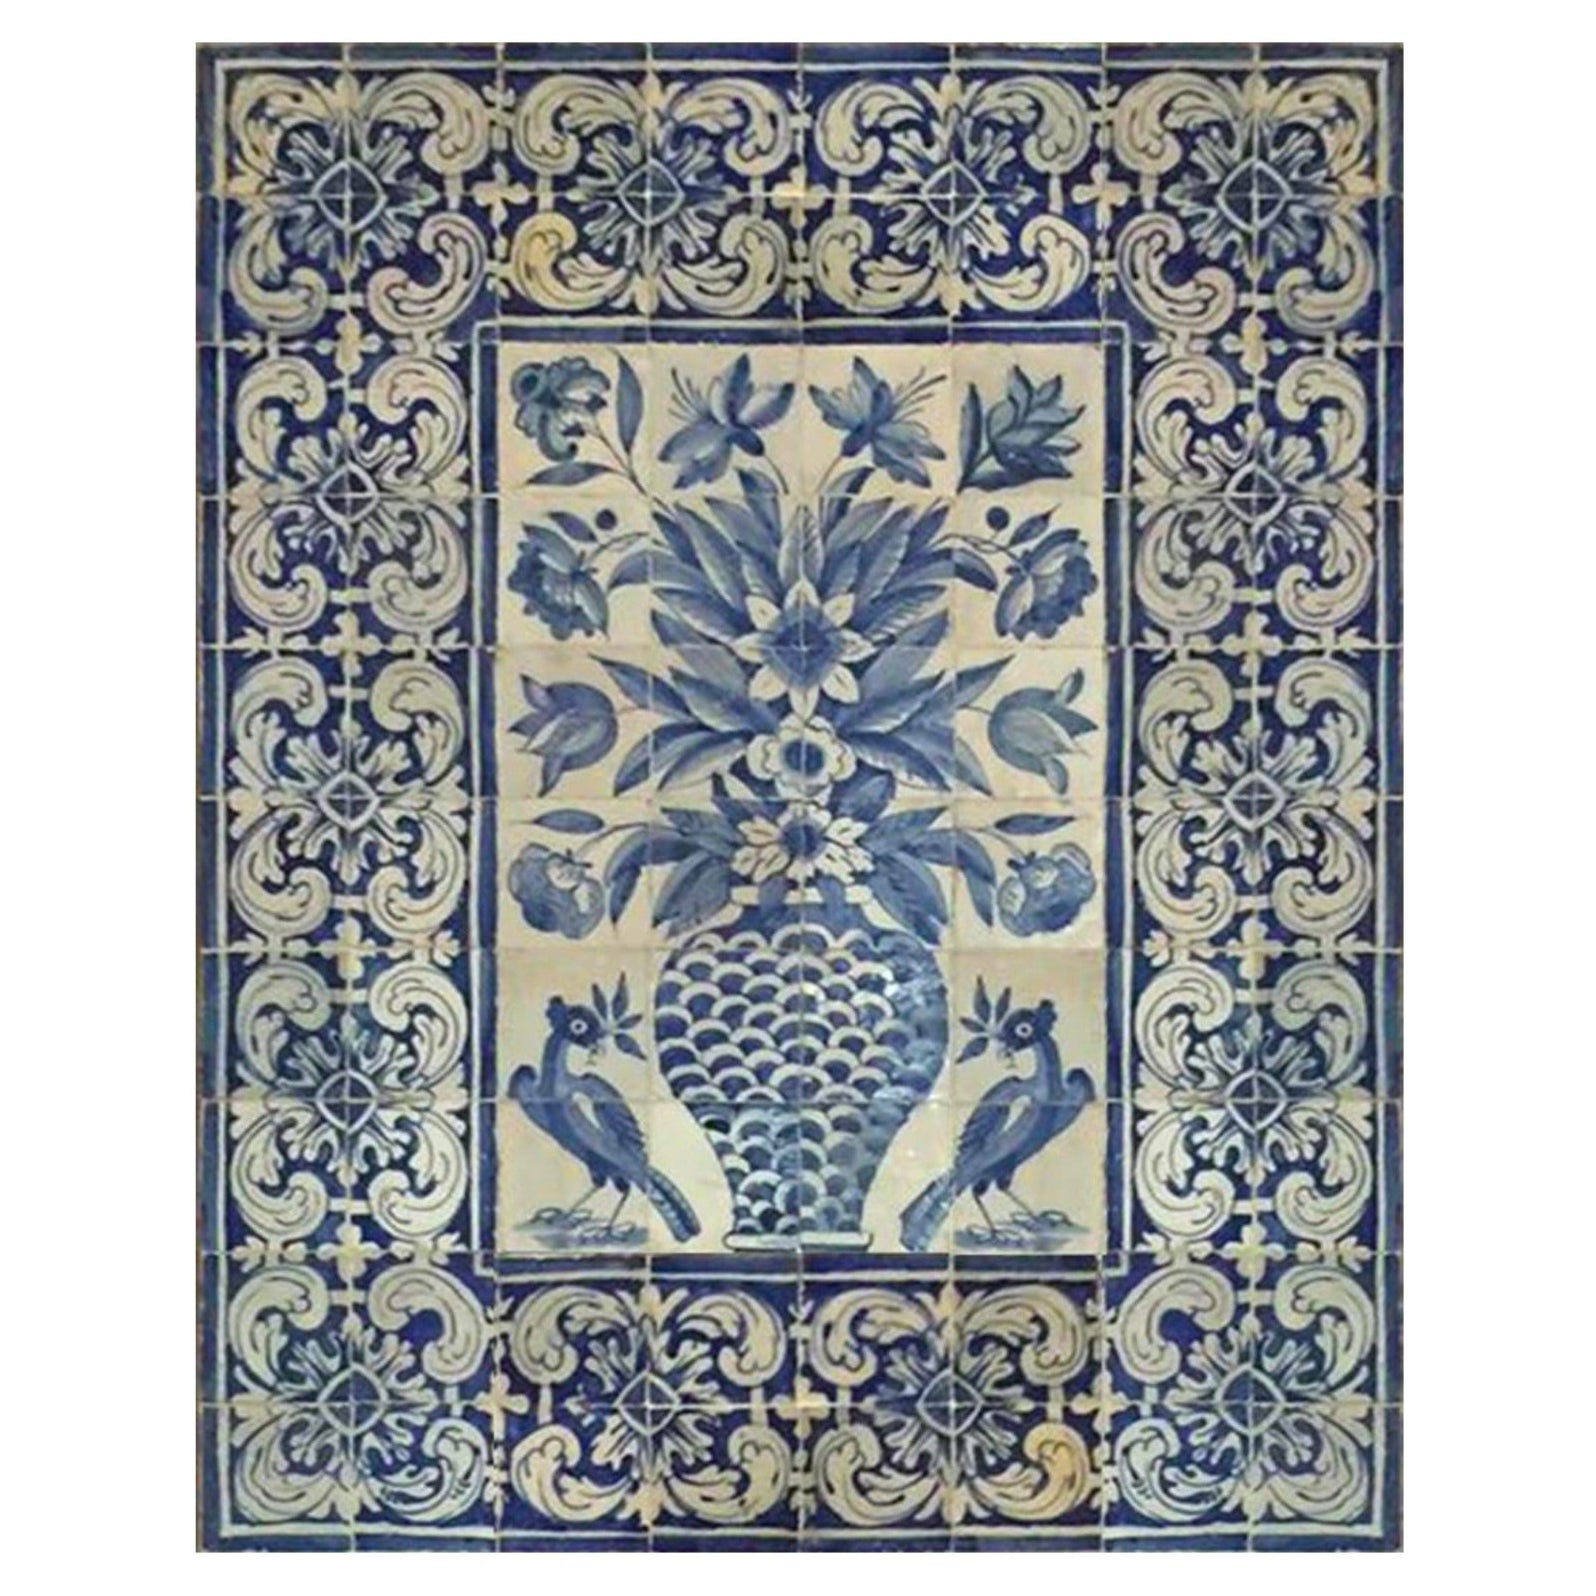 17th Century Portuguese "Azulejos" Panel "Vase"